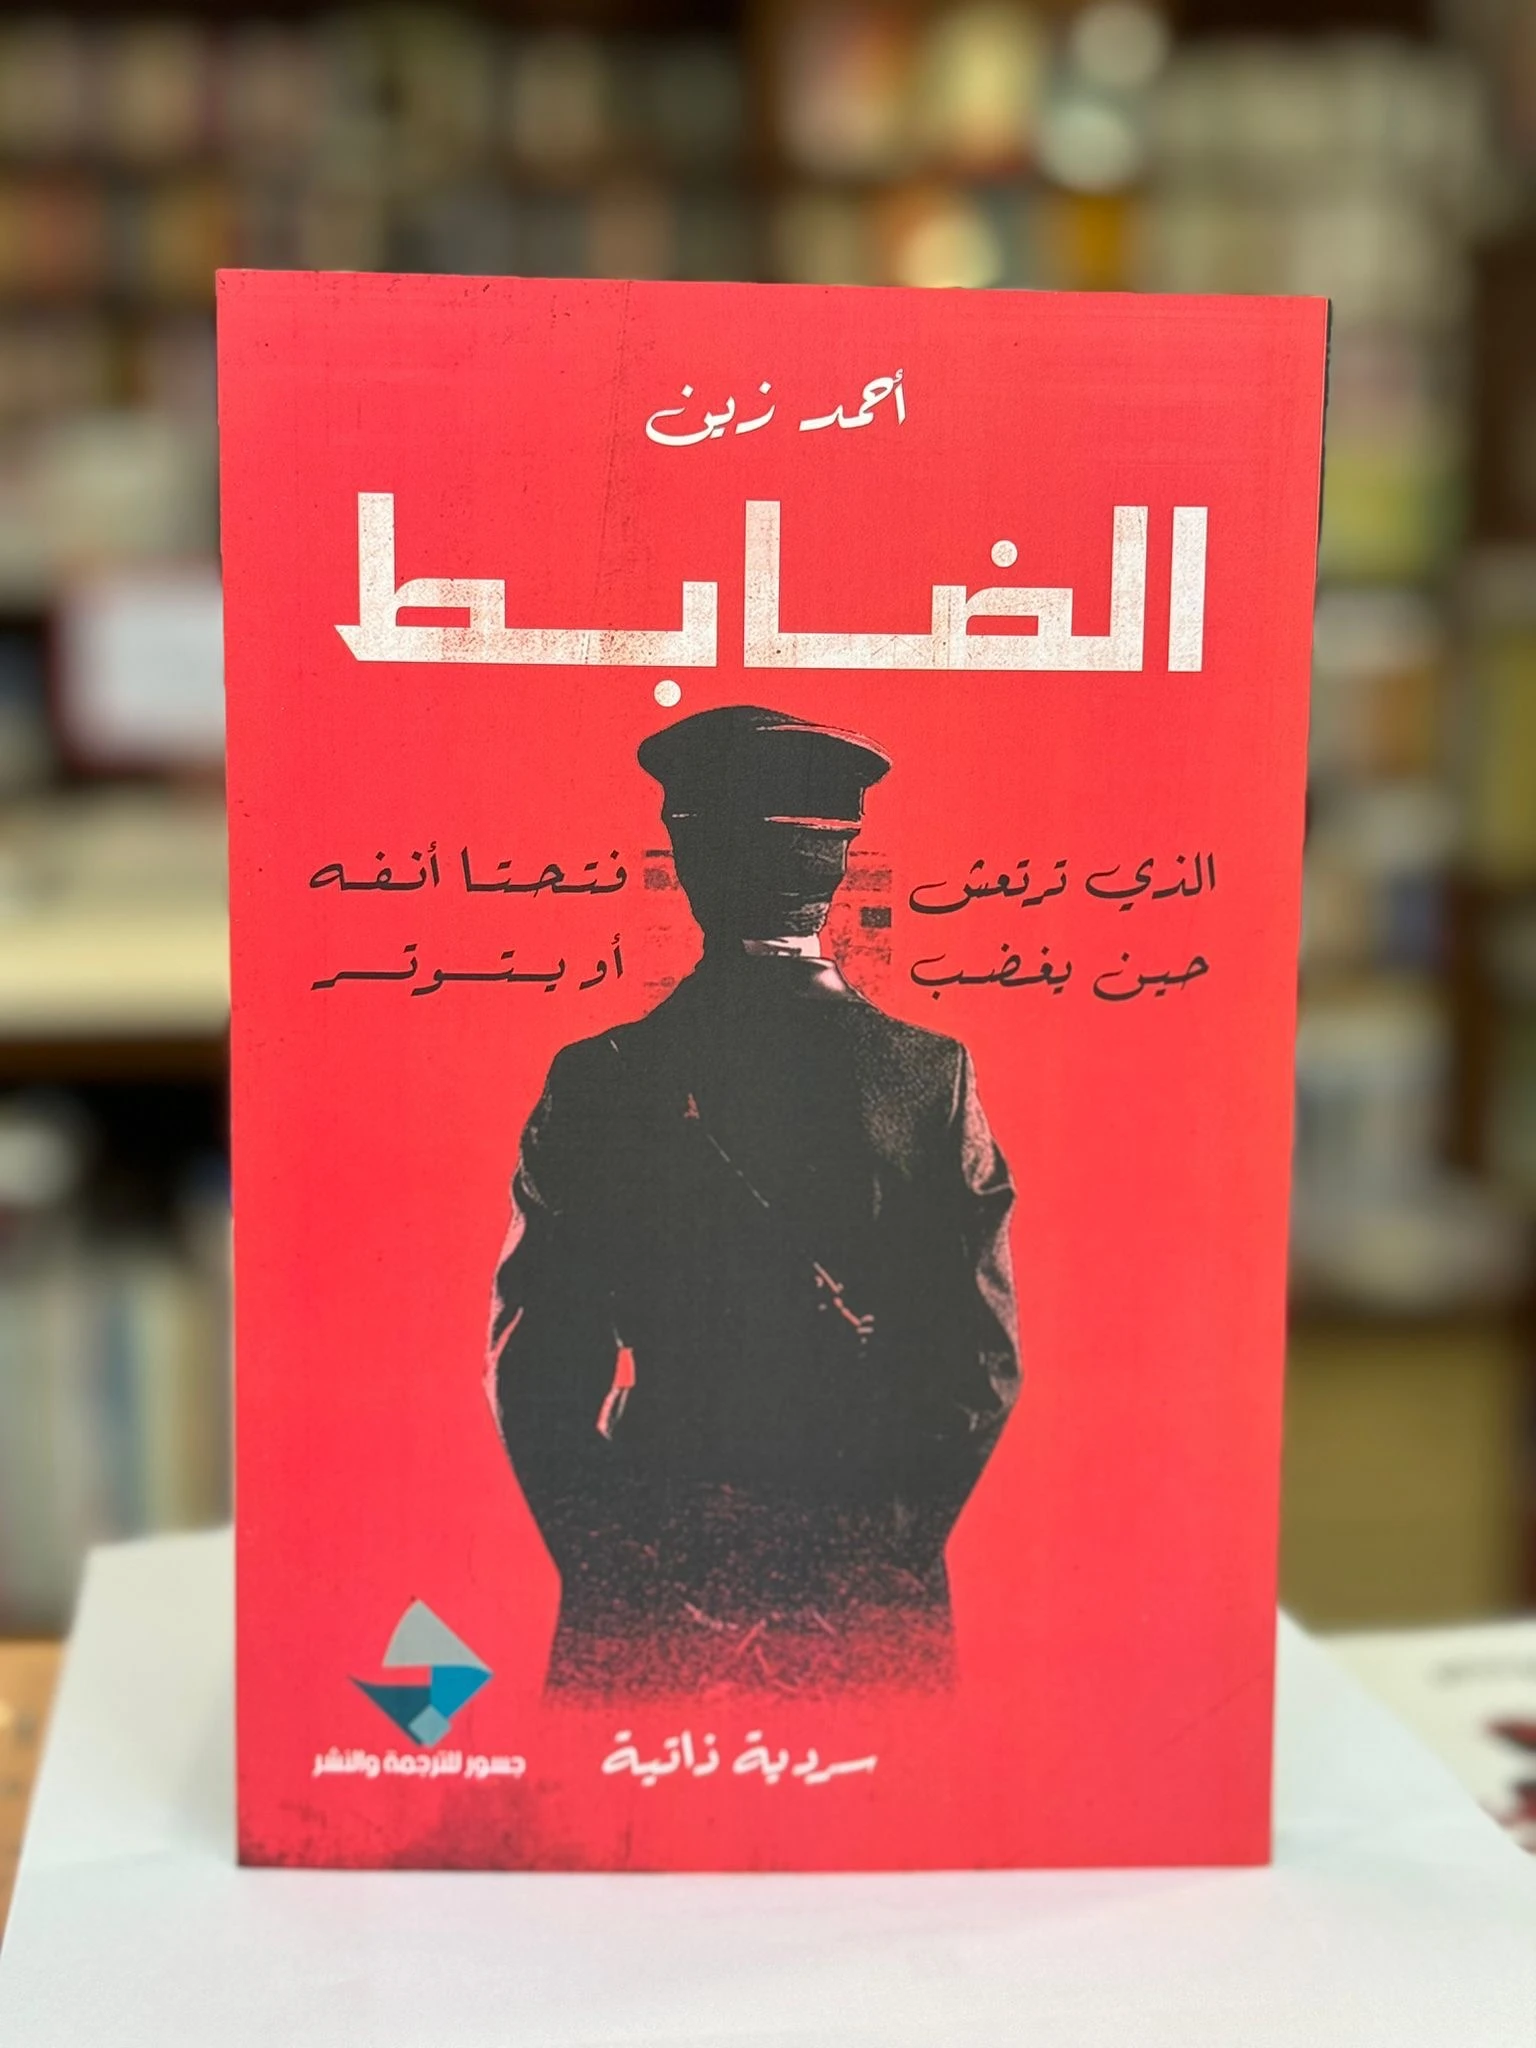 كتاب "الضابط" للكاتب المصري أحمد زين